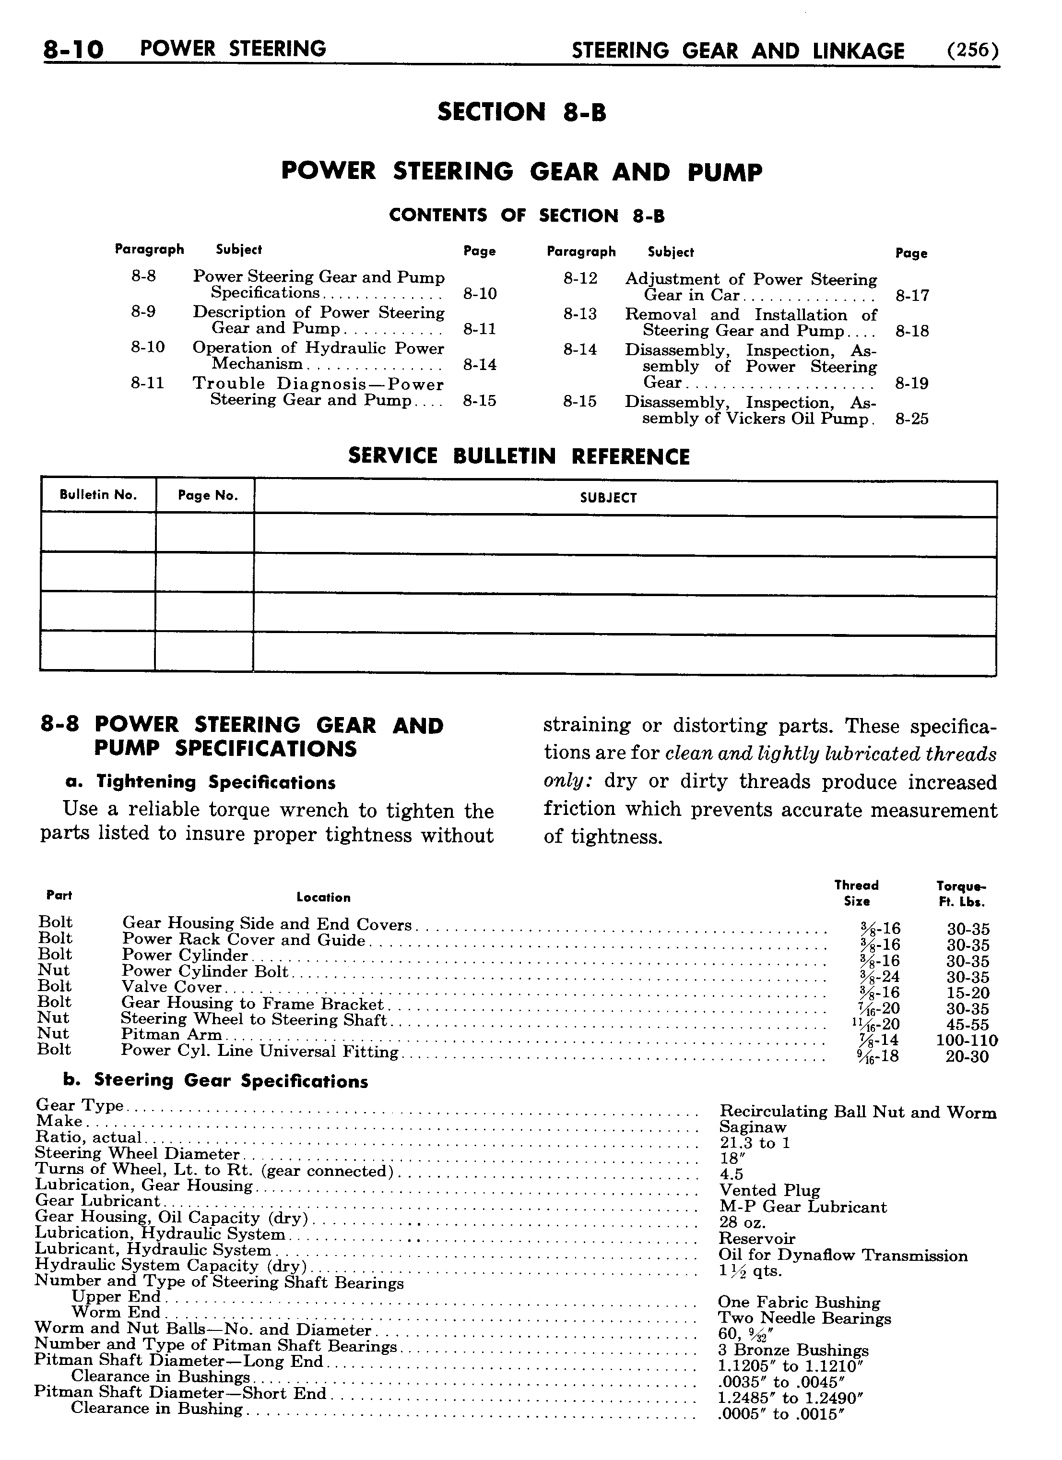 n_09 1955 Buick Shop Manual - Steering-010-010.jpg